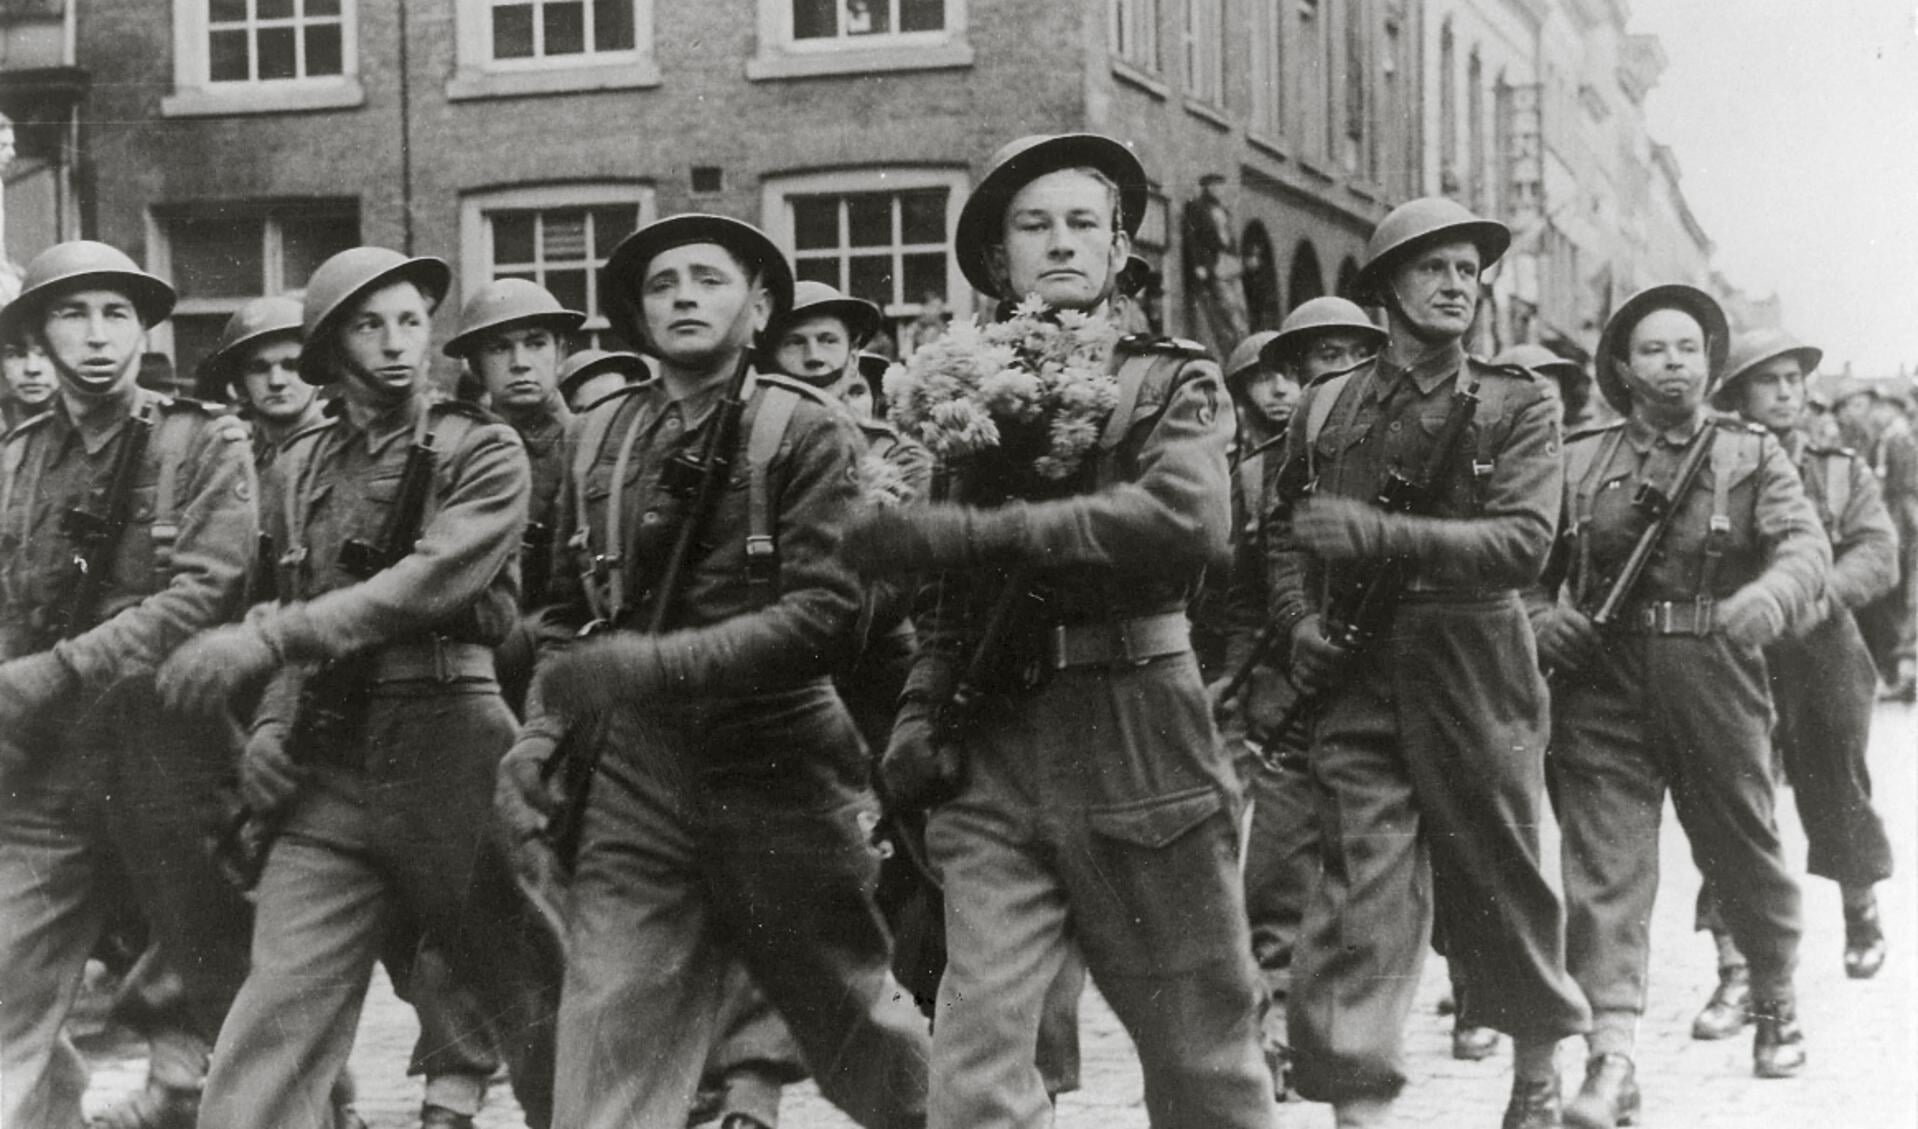 Breda, 11 november 1944
Vanaf de hoek van de Halstraat en de Sint-Janstraat in Breda marcheren Poolse troepen met onmiskenbare trots de Grote Markt op bij hun overwinningsparade op 11 november, de Poolse nationale feestdag